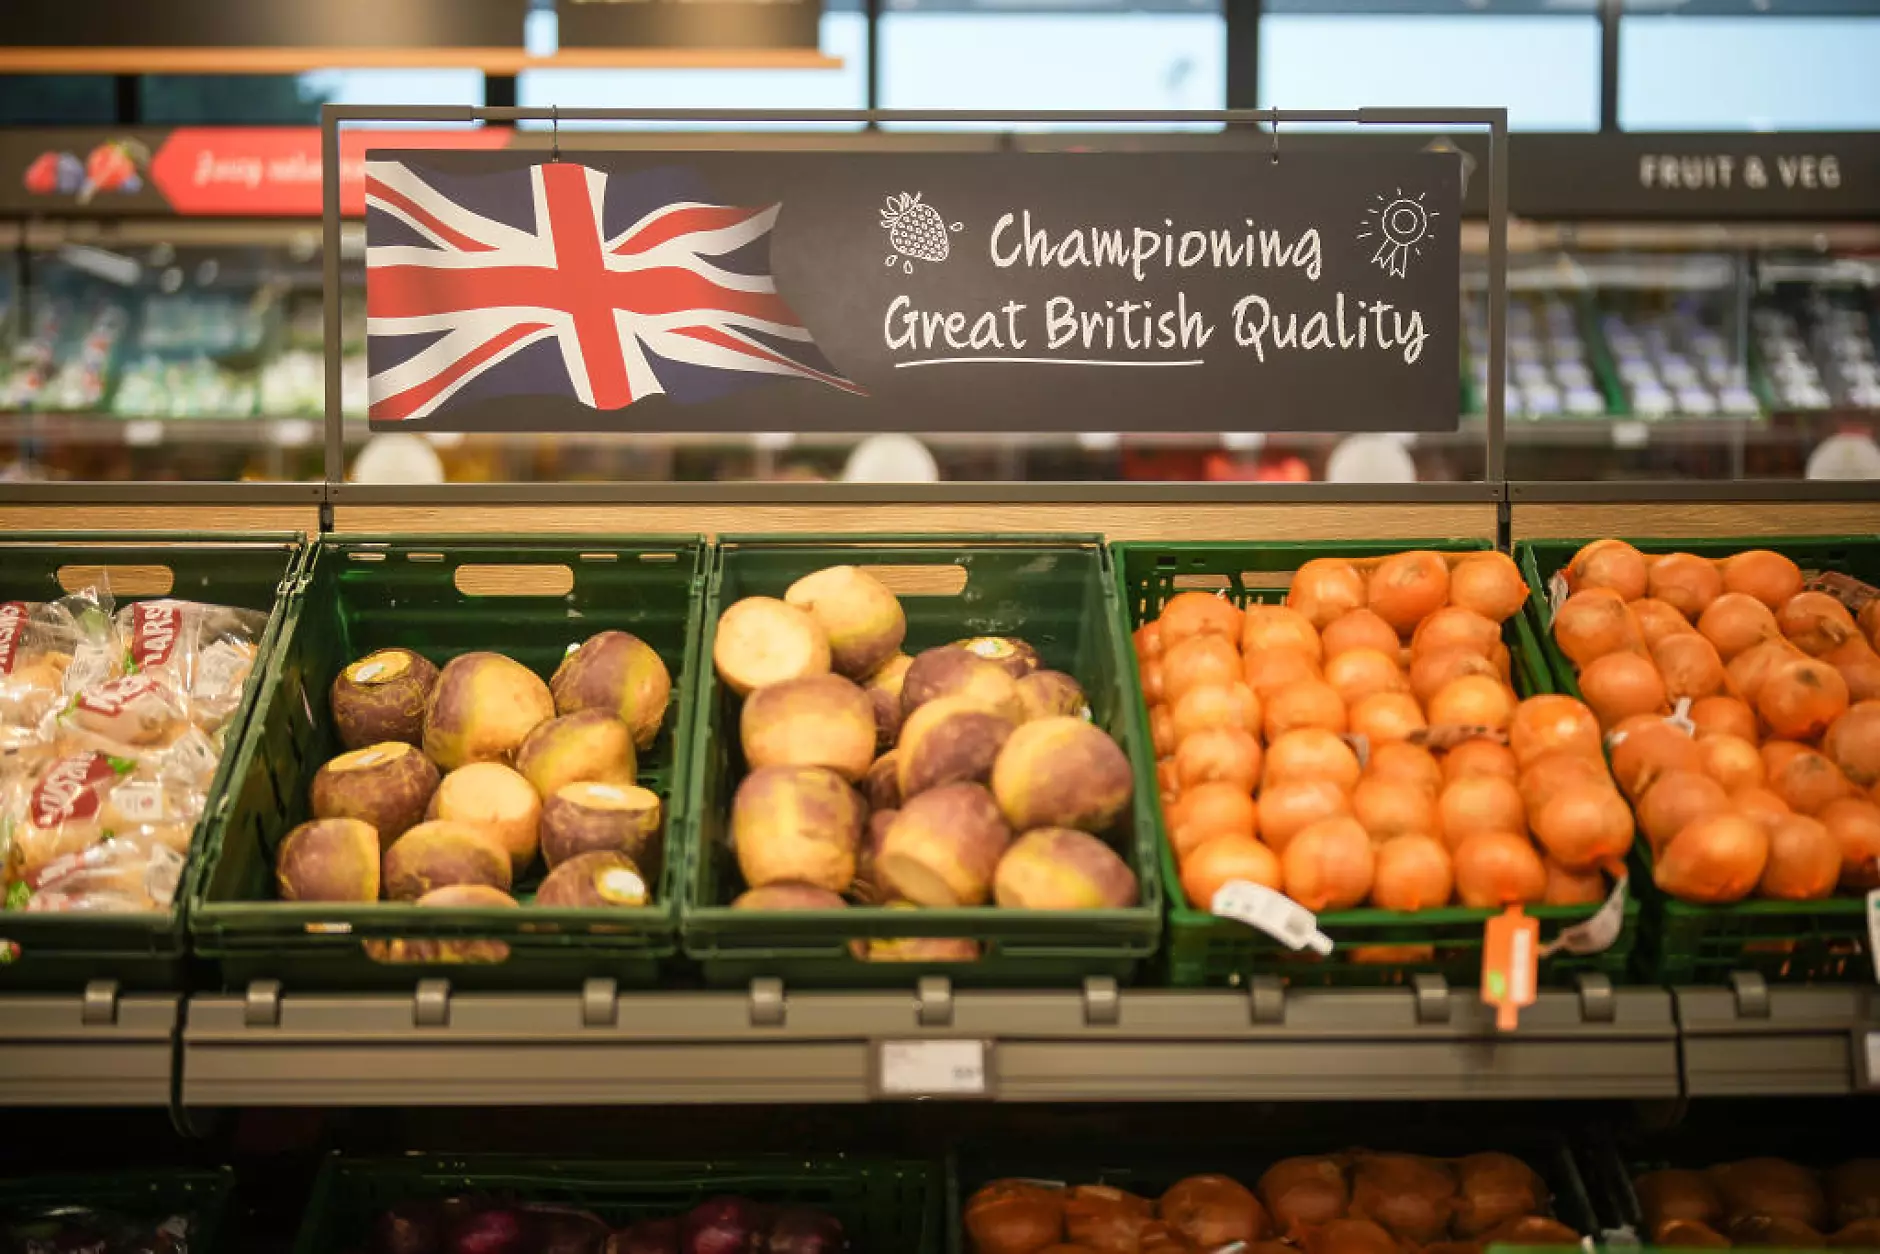 Годишната инфлация във Великобритания забавя темпото